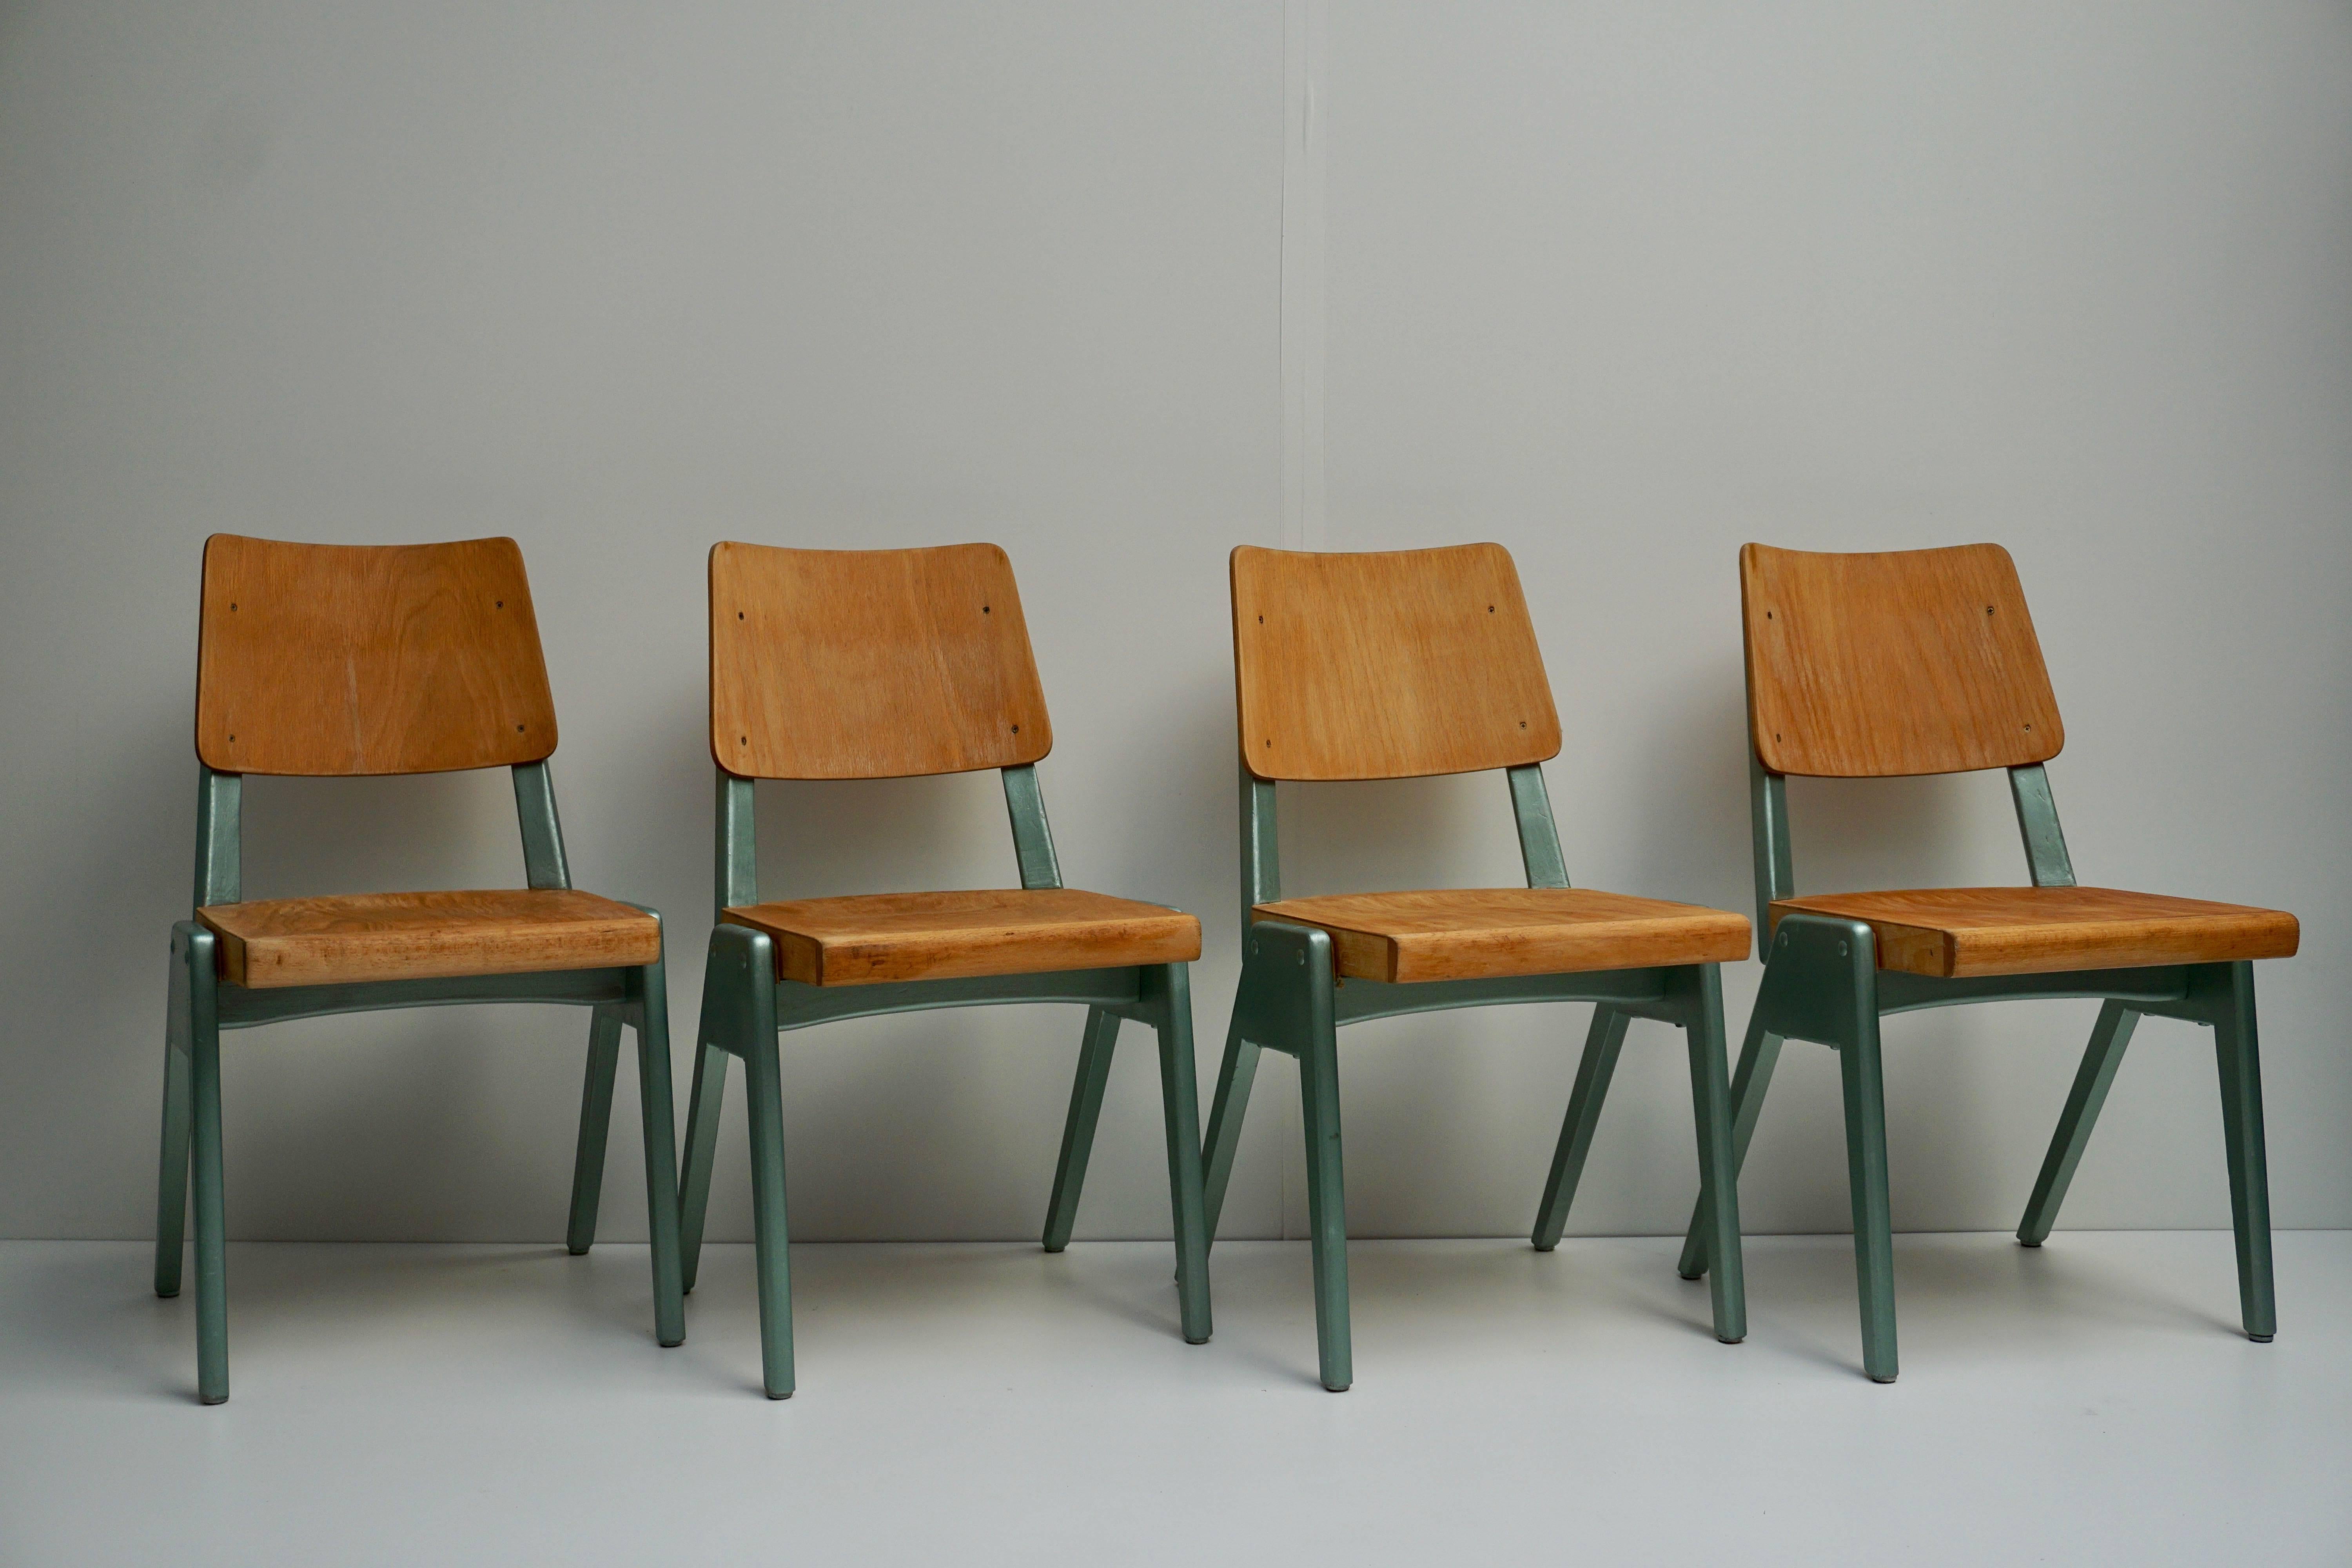 Ensemble de quatre chaises de salle à manger, années 1950.
Mesures : Hauteur du siège 42 cm.